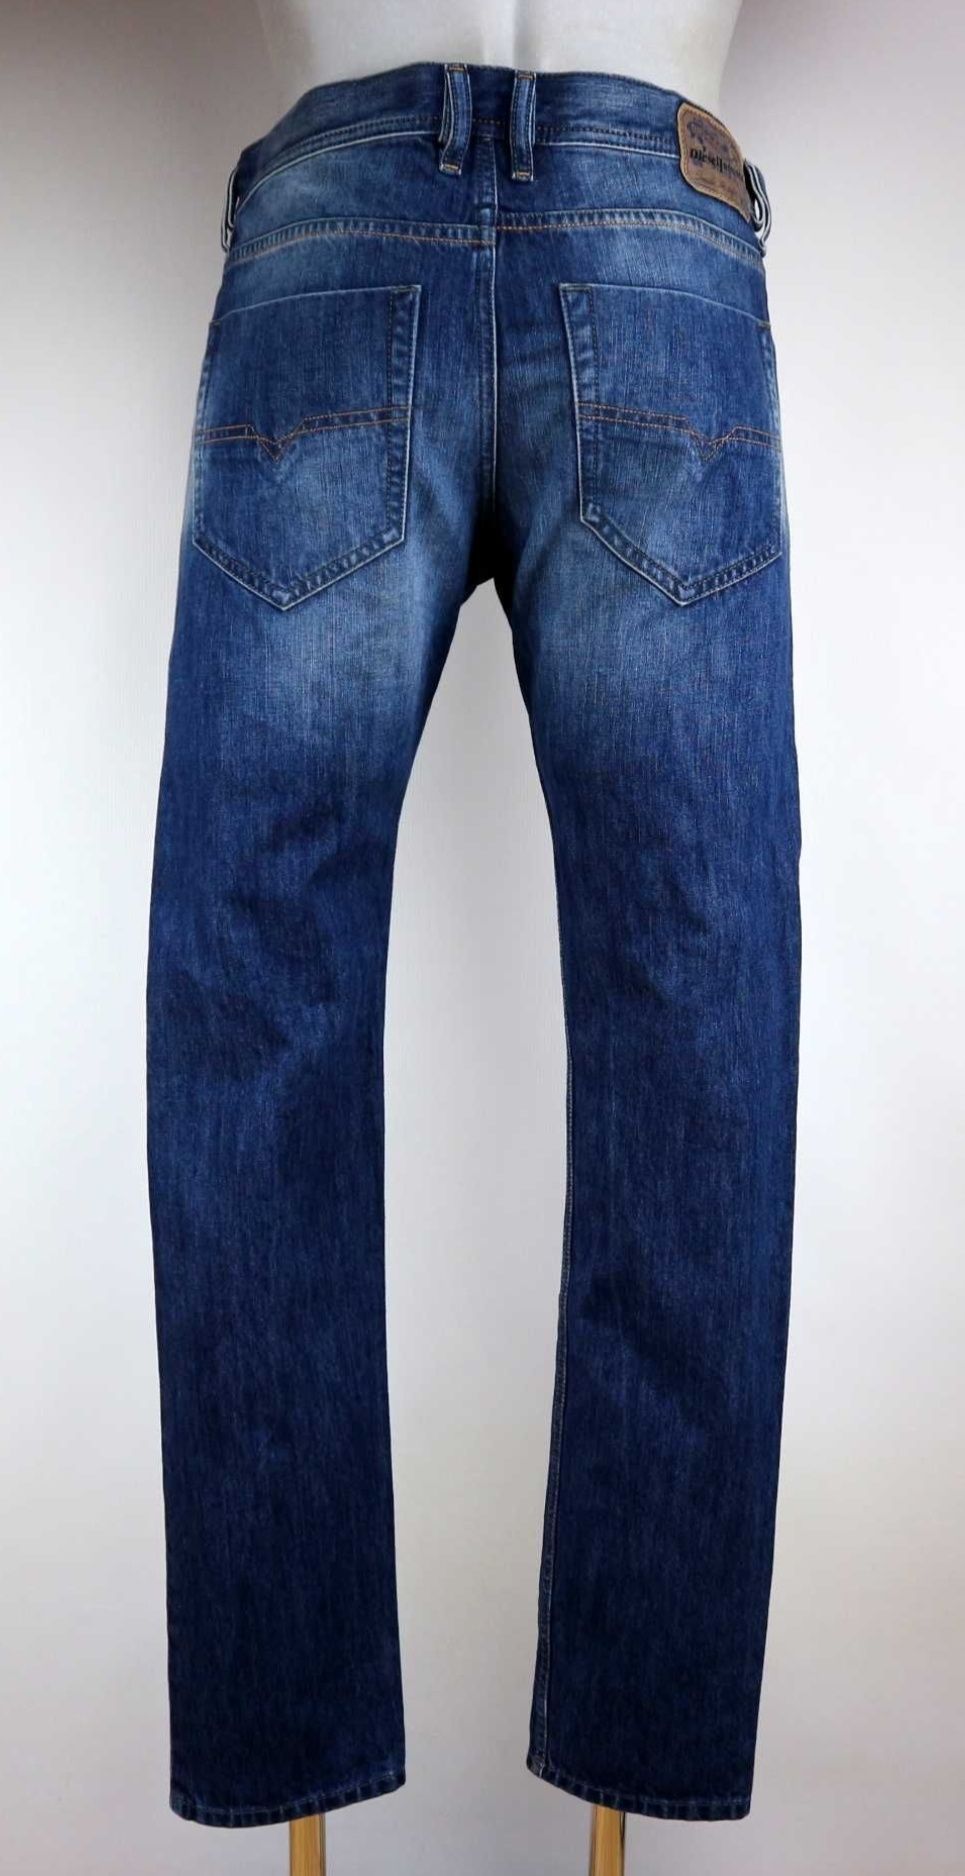 Diesel Tepphar spodnie jeansy W32 L32 pas 2 x 46 cm